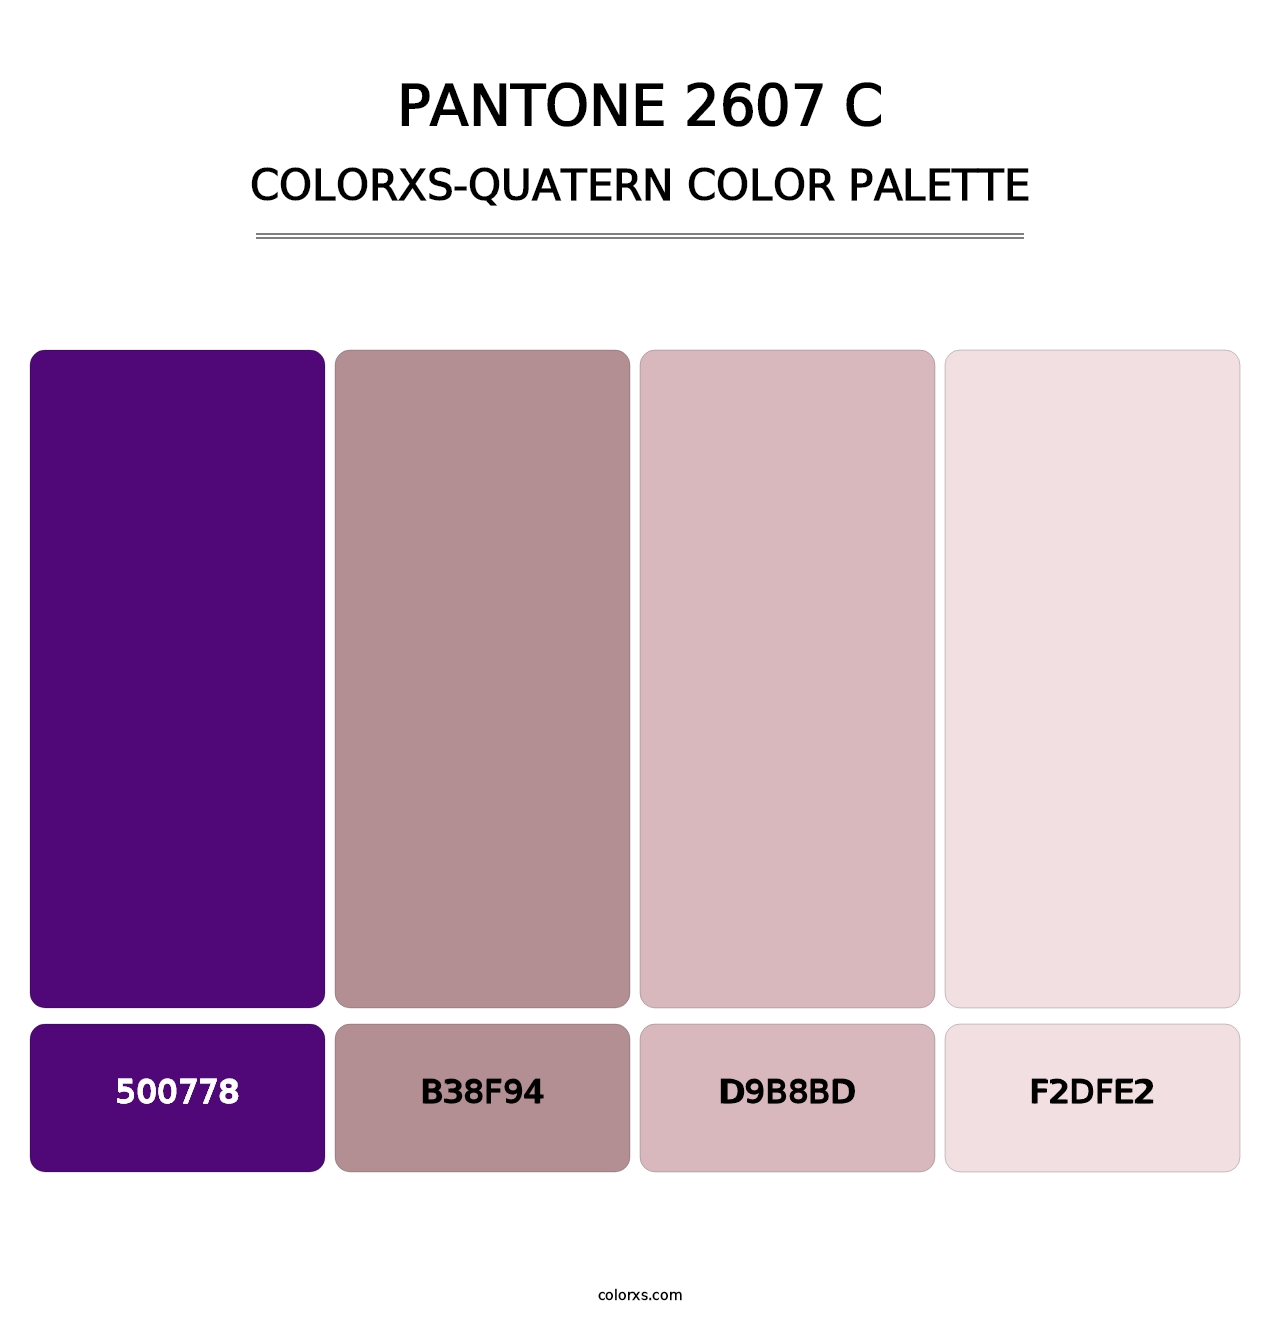 PANTONE 2607 C - Colorxs Quatern Palette